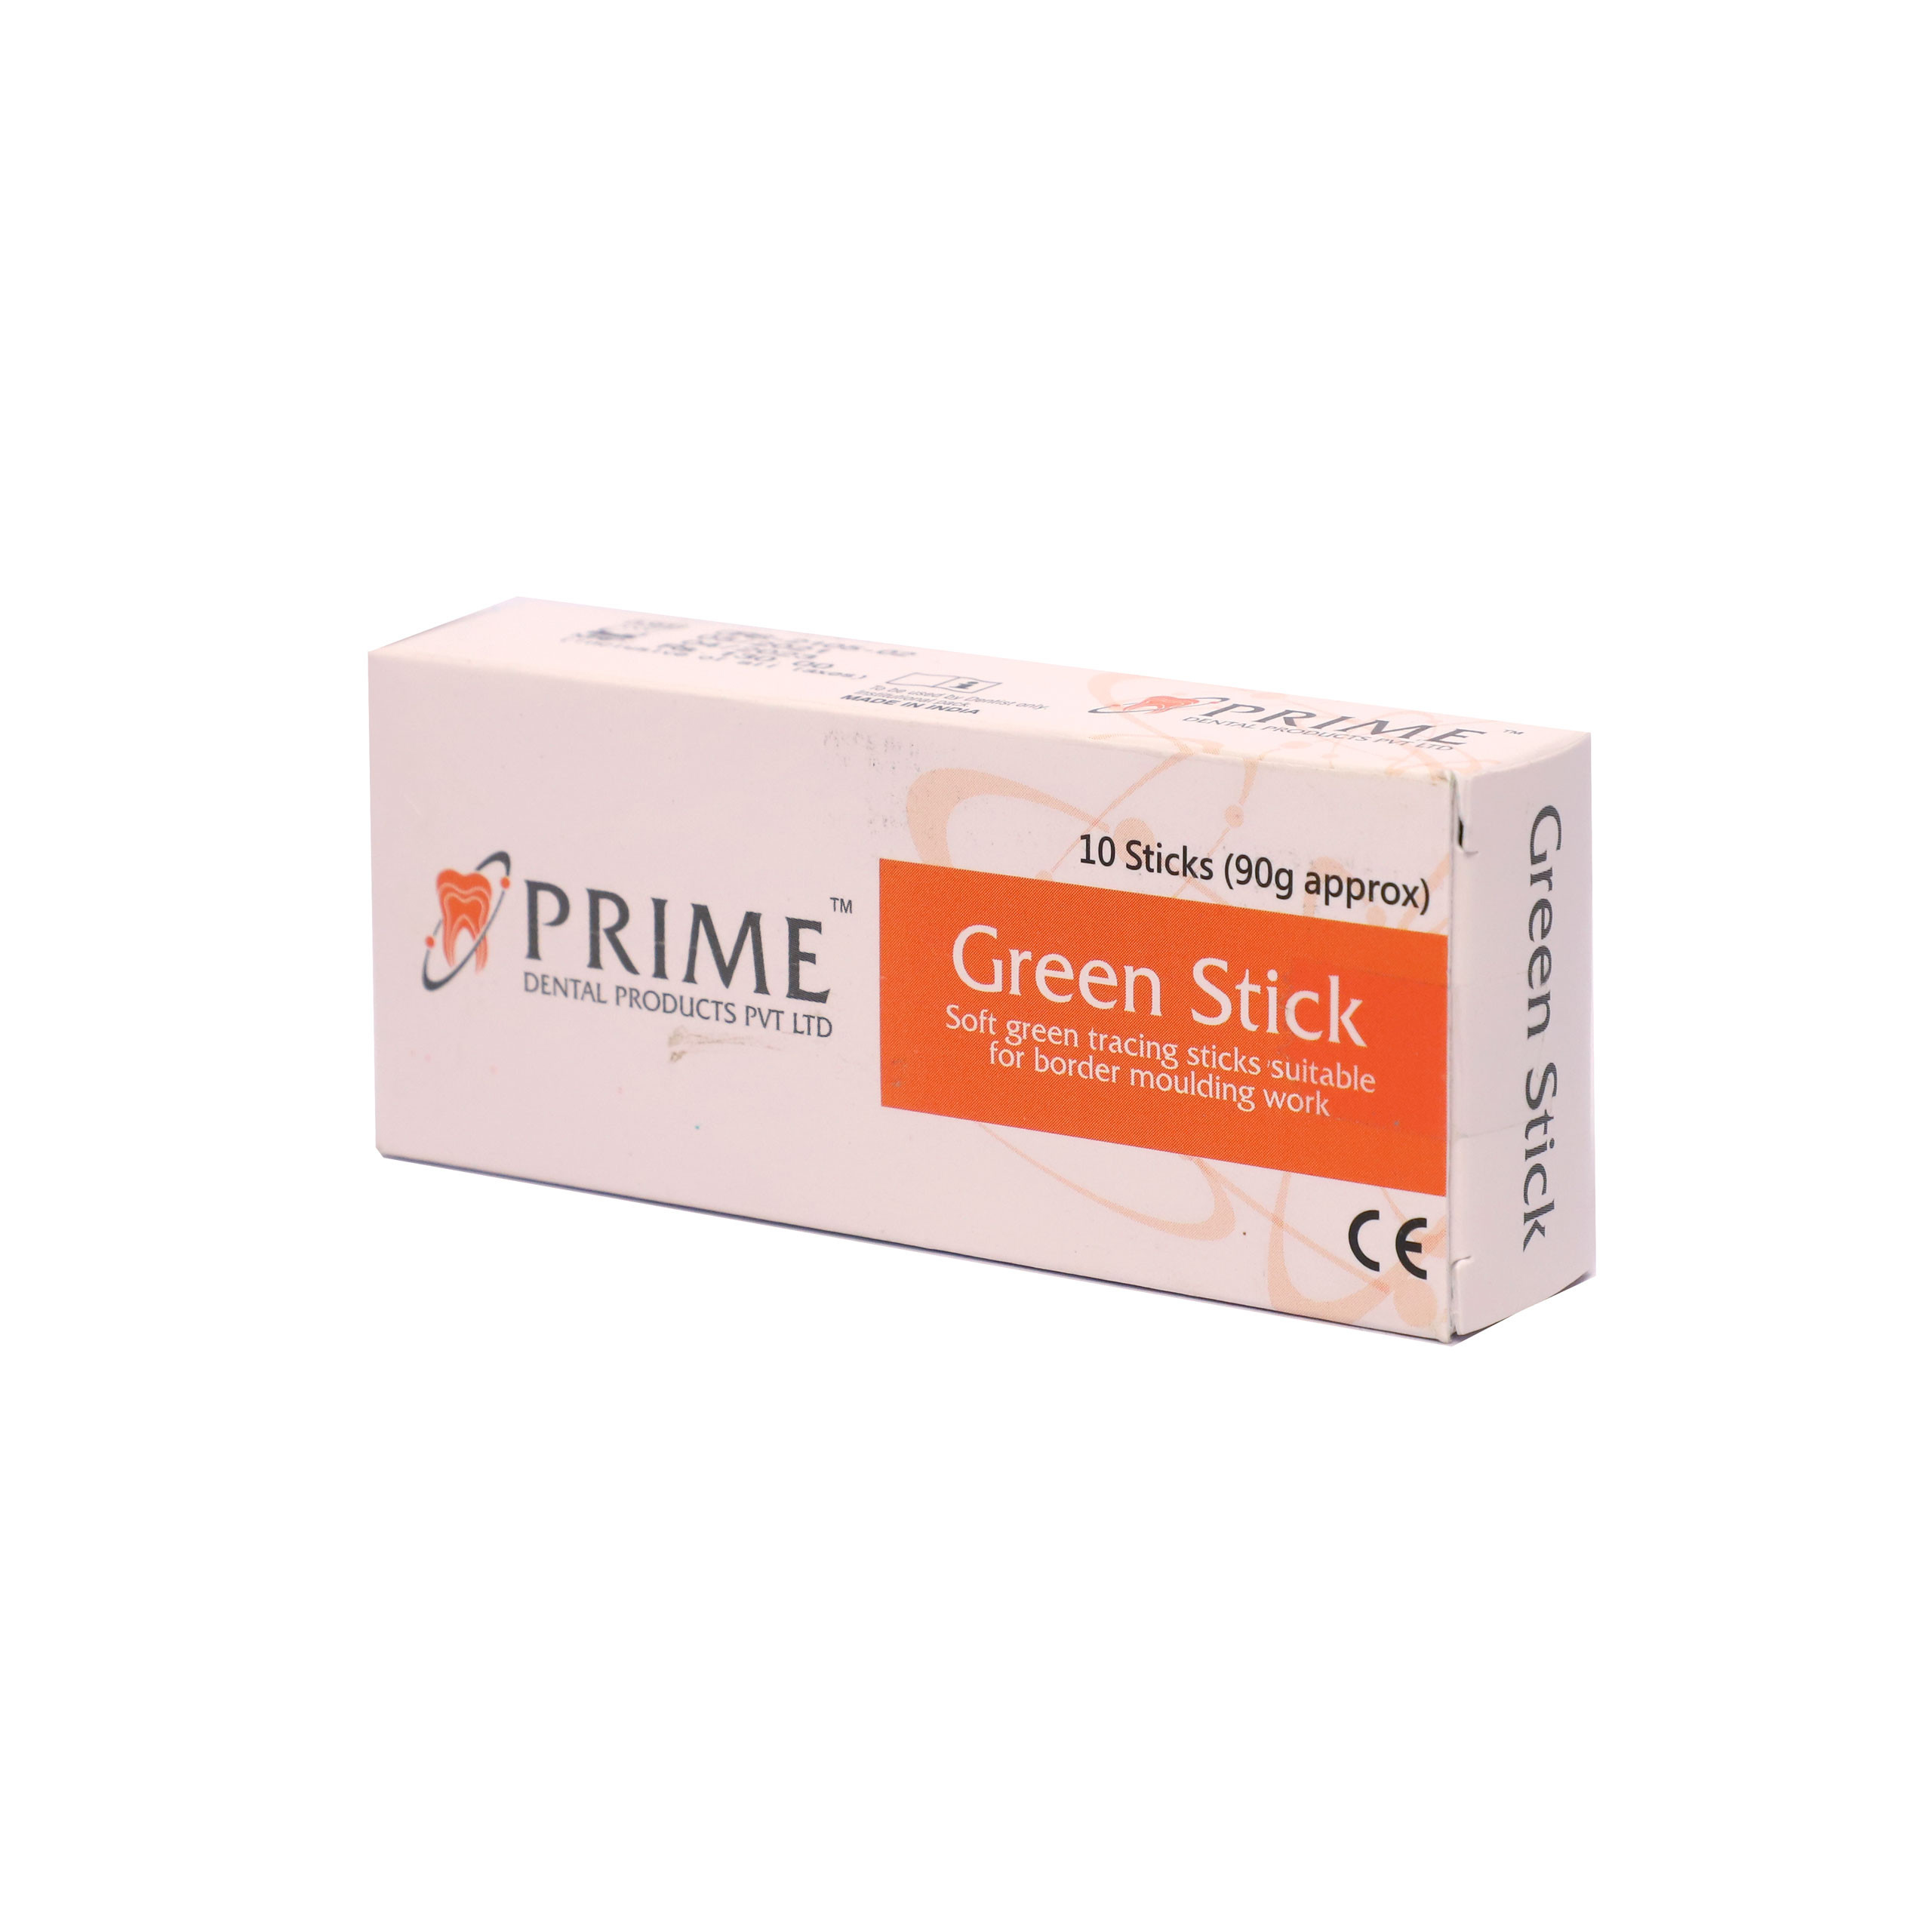 Prime Green Stick